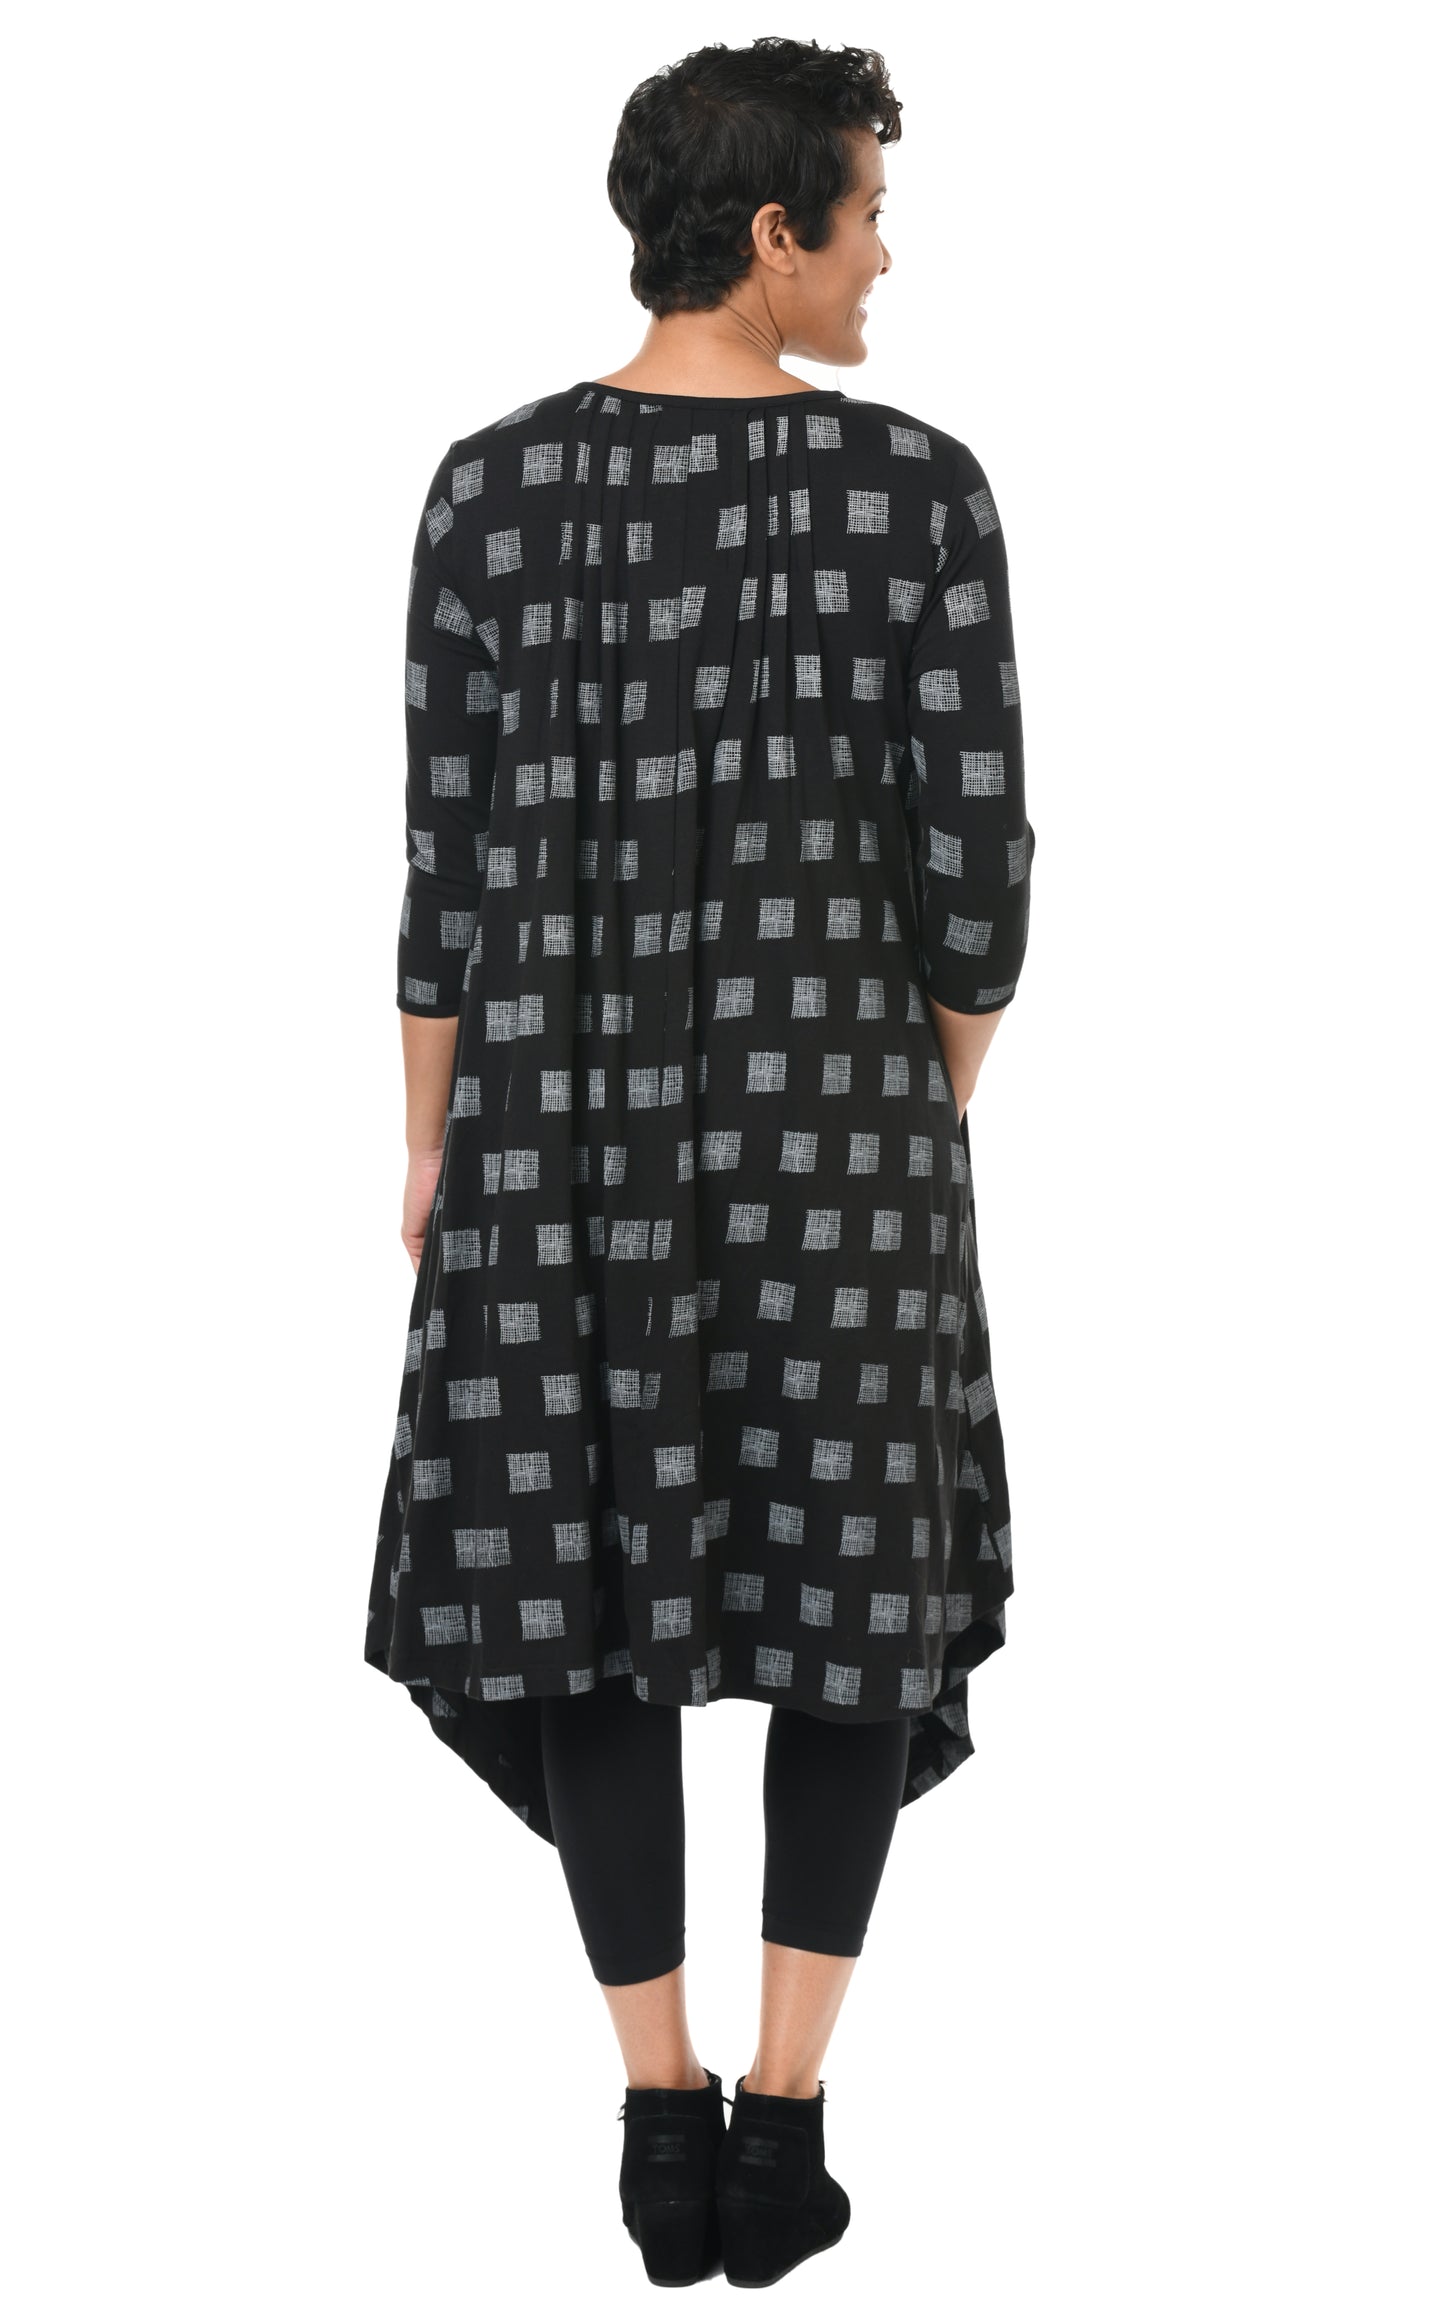 FINAL SALE SDM49 Lexi Dress in Black Gray Mini Chex*